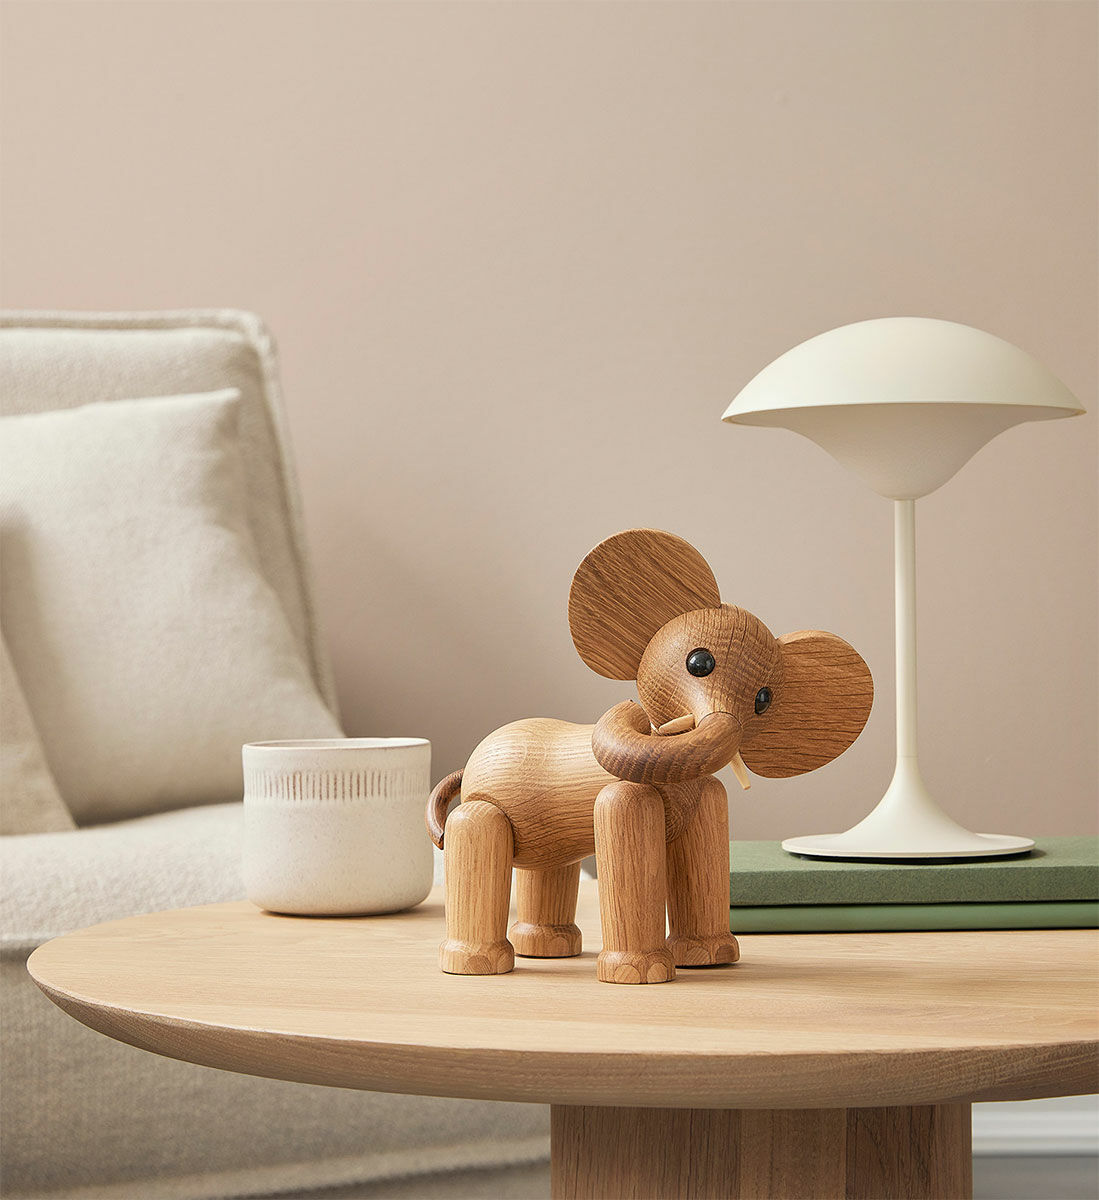 Wooden figure "Elephant Ollie" - Design Chresten Sommer by Spring Copenhagen